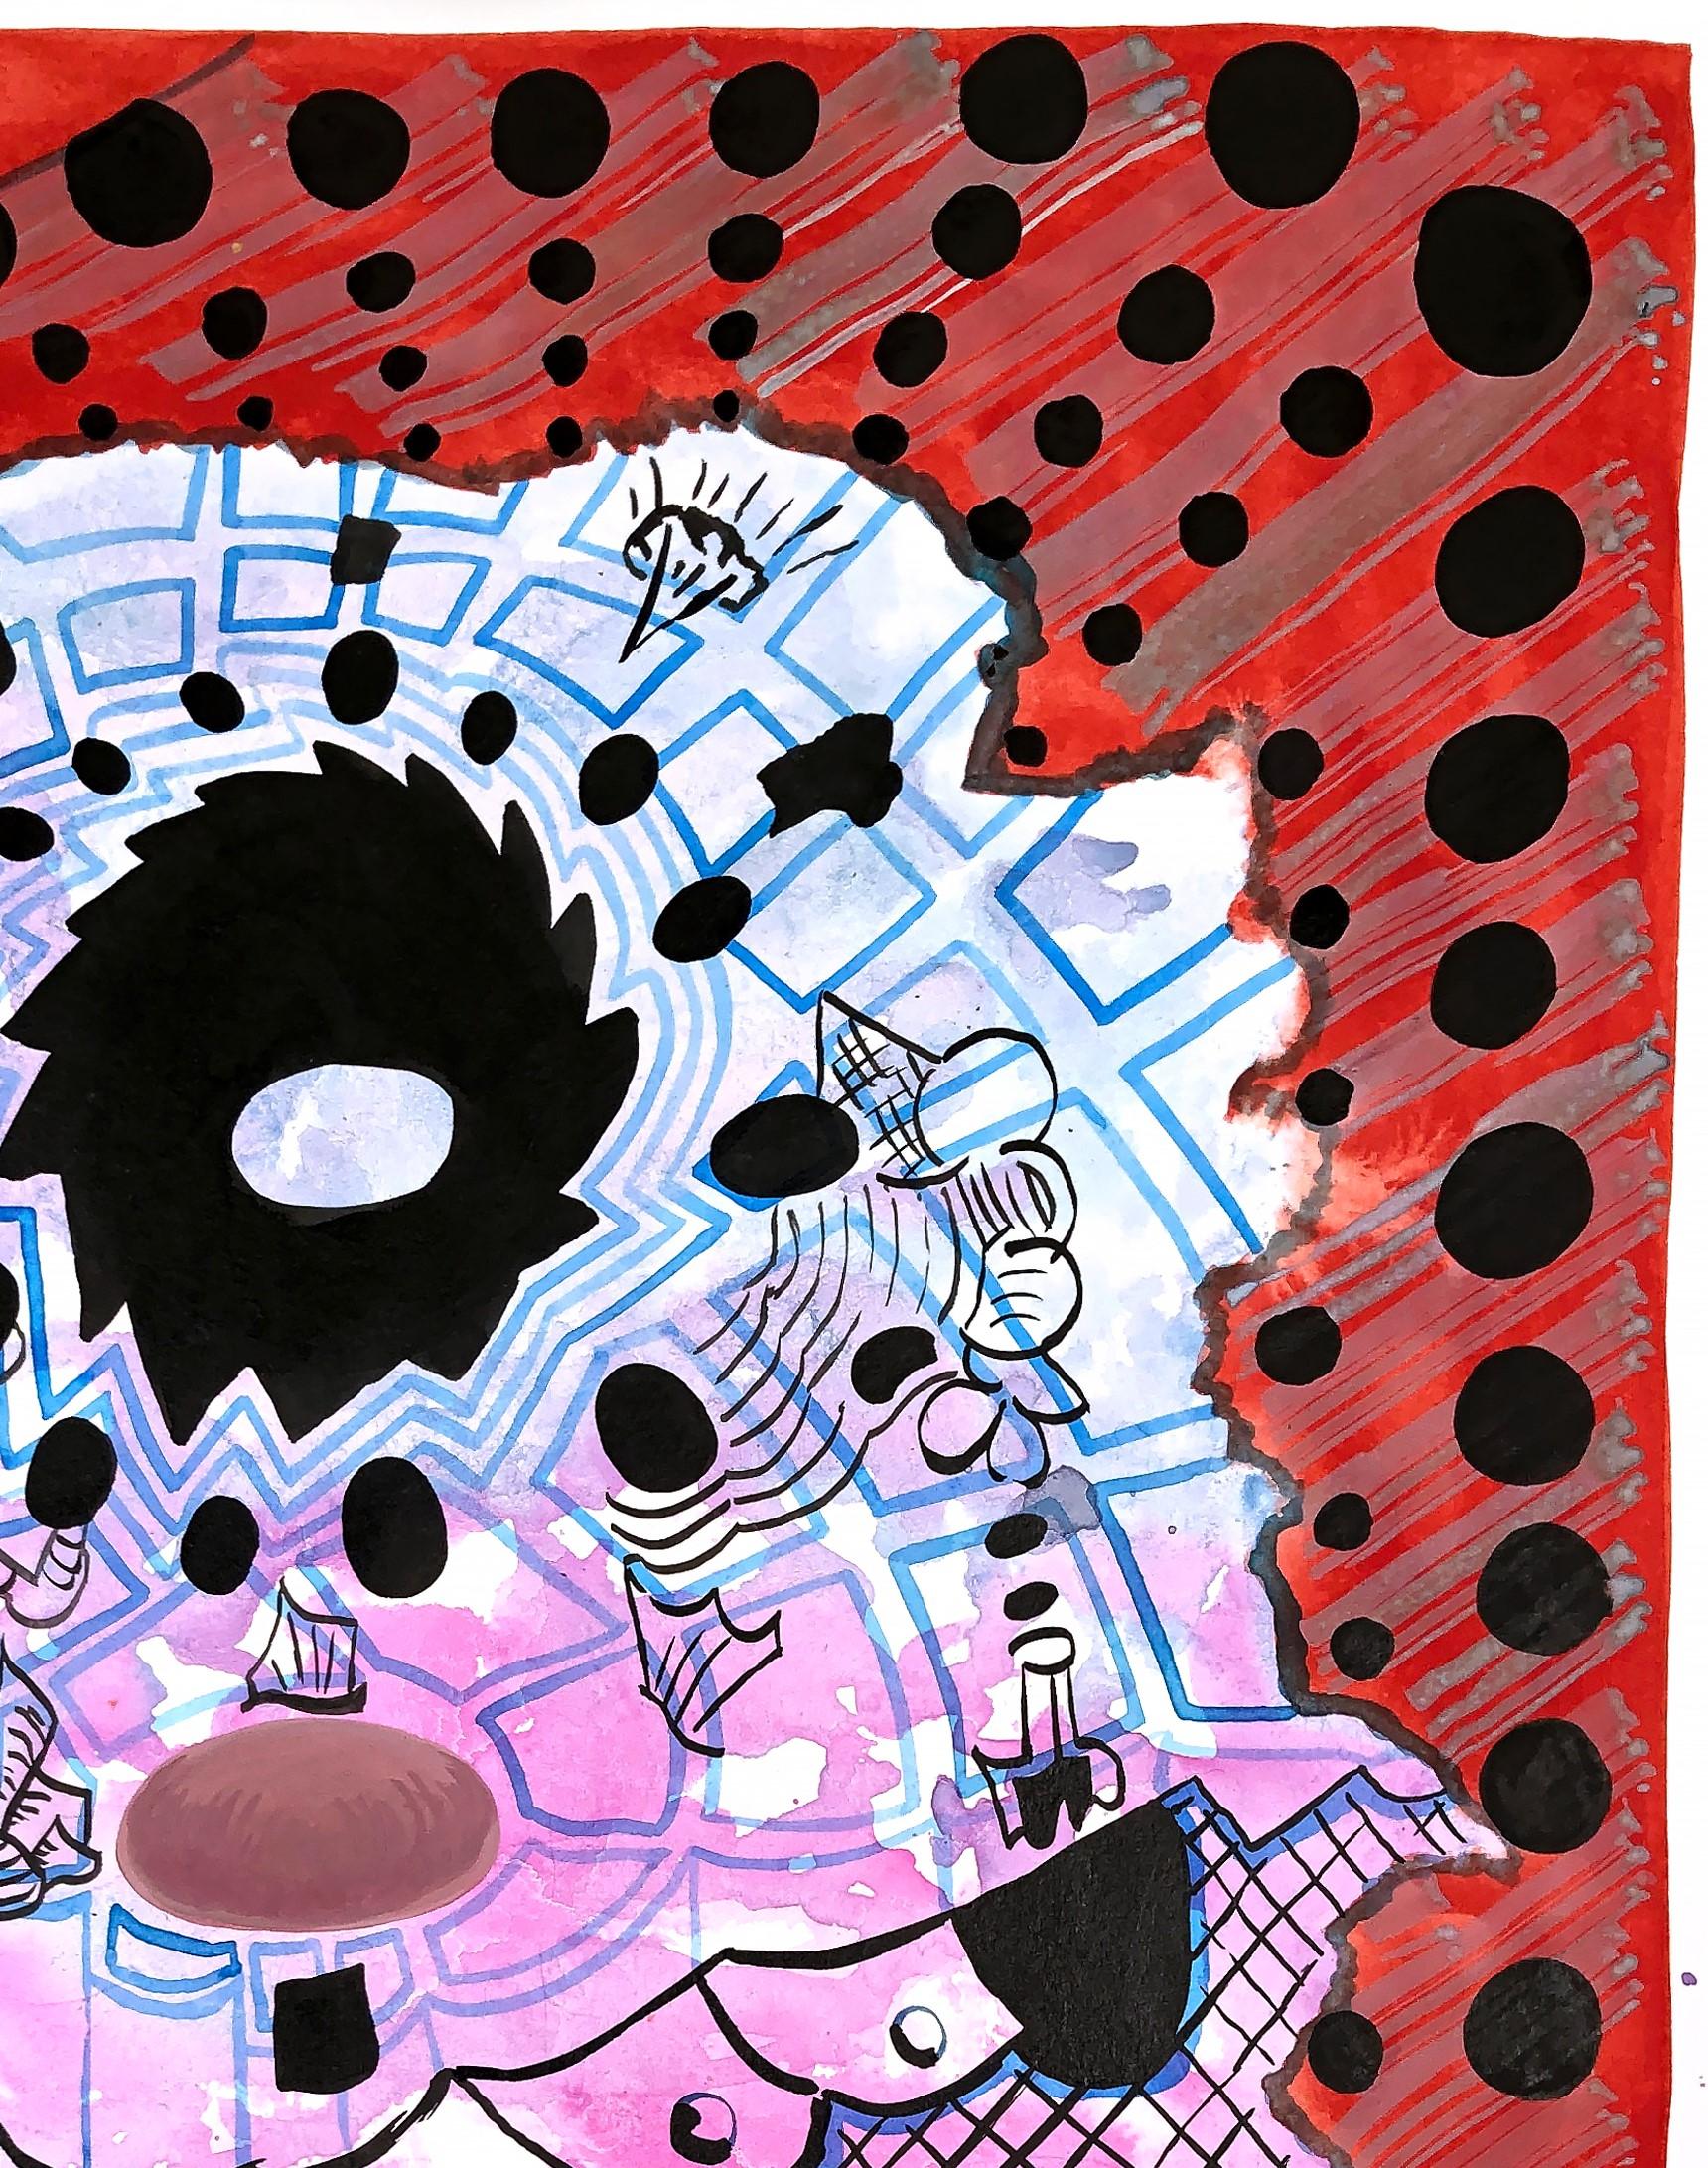 Peinture abstraite, géométrique, colorée et à motifs, réalisée par l'artiste texan Max Manning. L'œuvre comporte des éléments organiques et  des formes géométriques en rouge, rose, bleu, jaune, noir et blanc. Signé par l'artiste au dos de la toile.